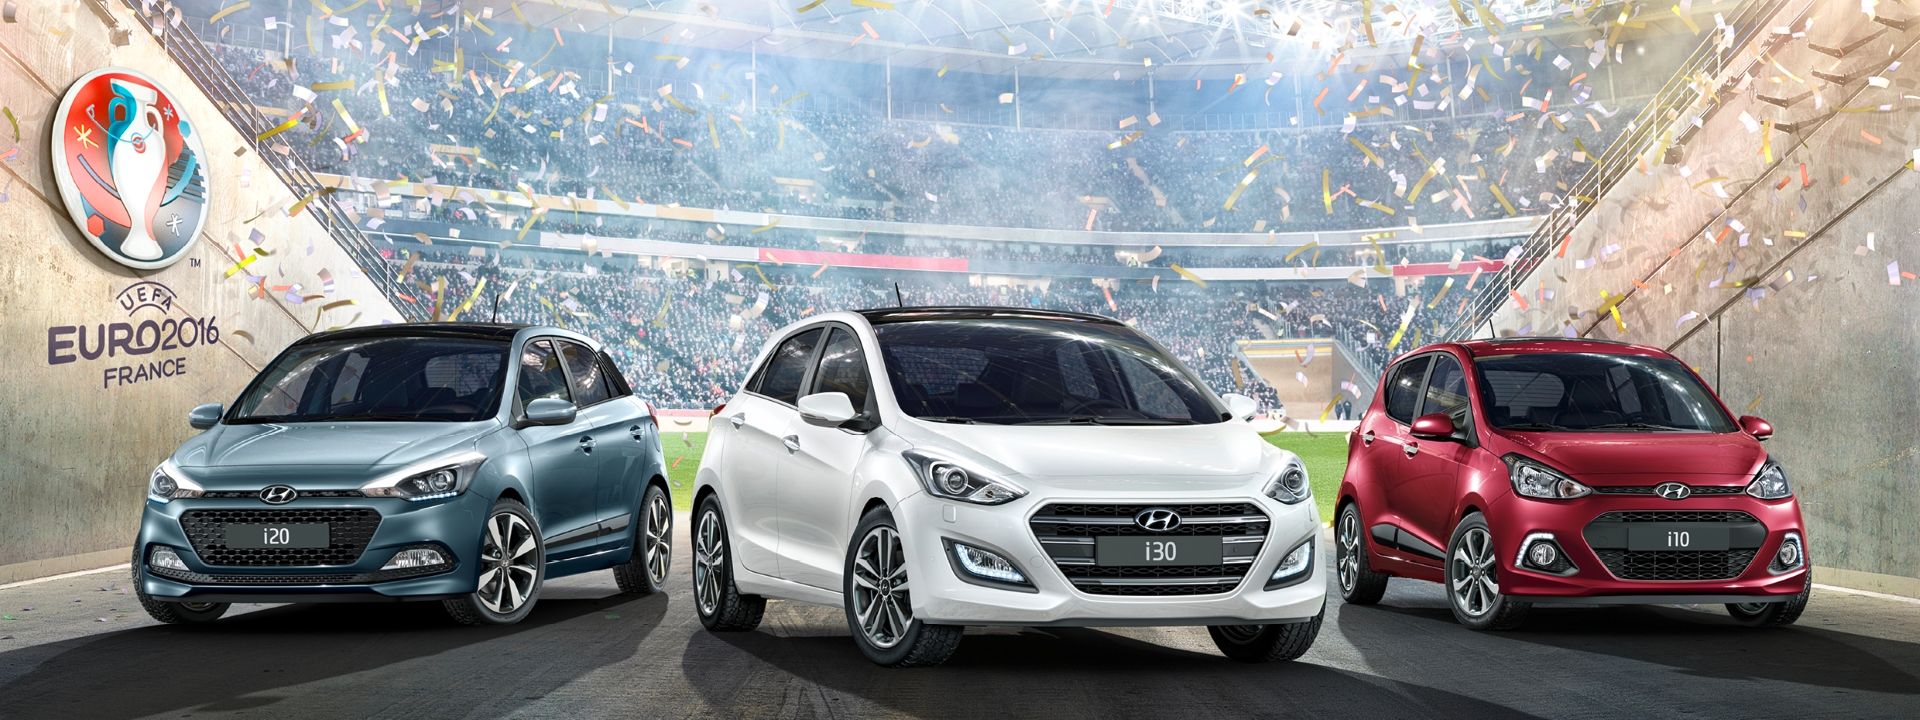 BCC introduces the Hyundai GO! Edition